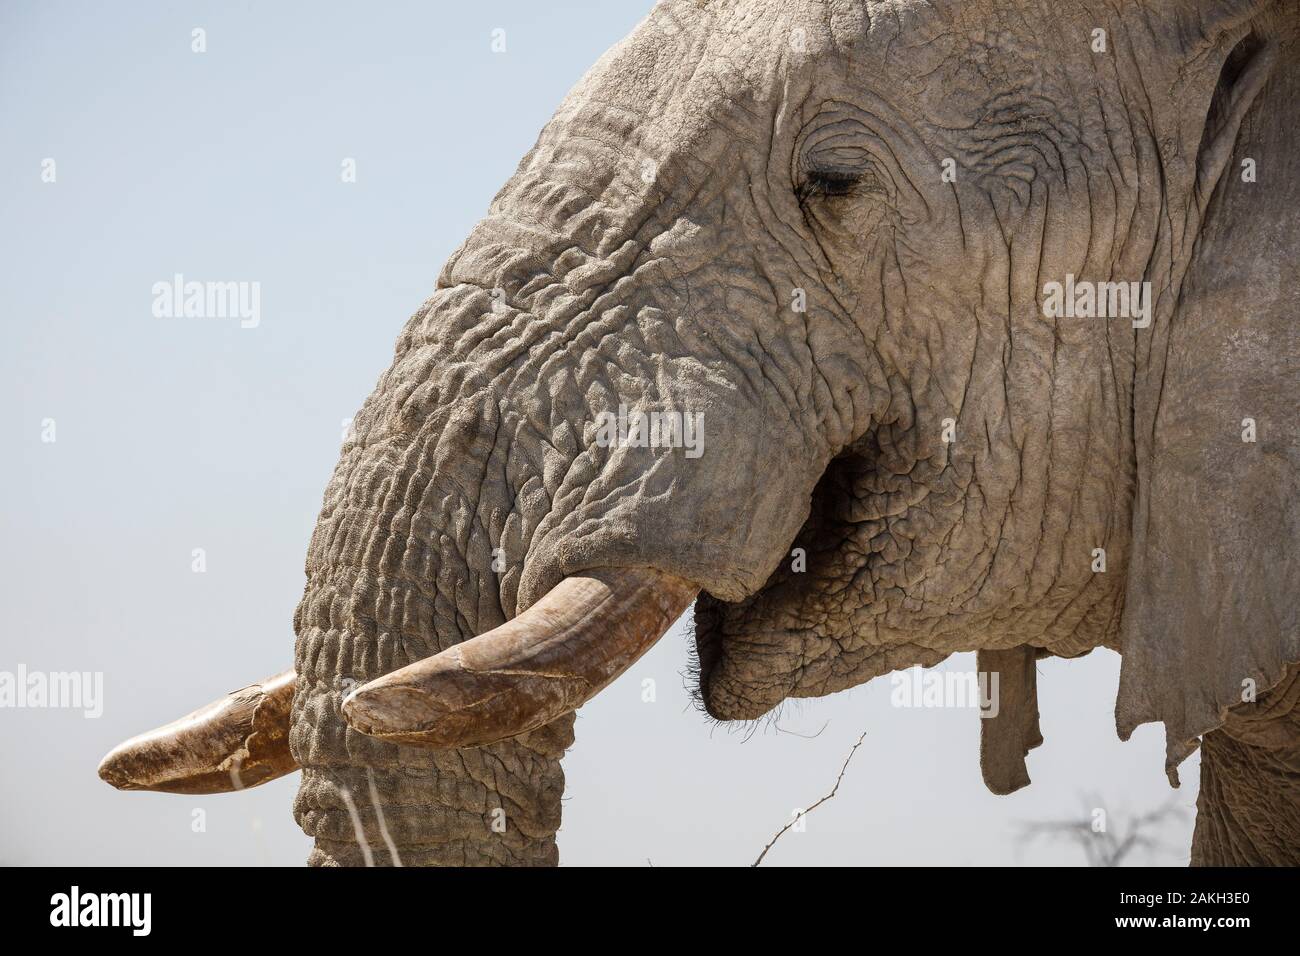 La Namibie, Oshikoto province, Etosha National Park, bush africain elephant (Loxodonta africana) Banque D'Images